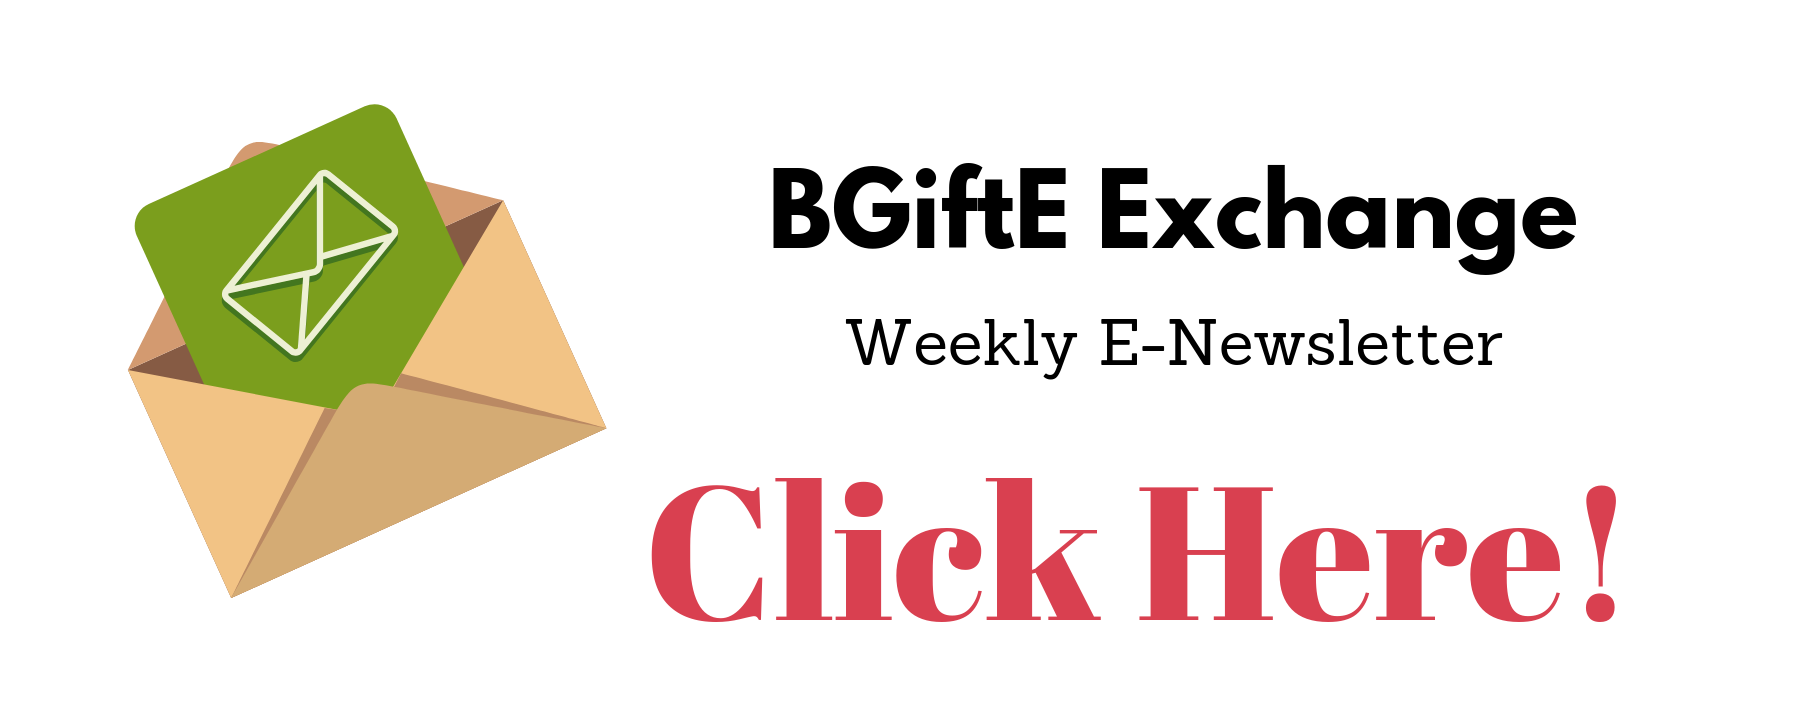 BGiftE Exchange Newsletter